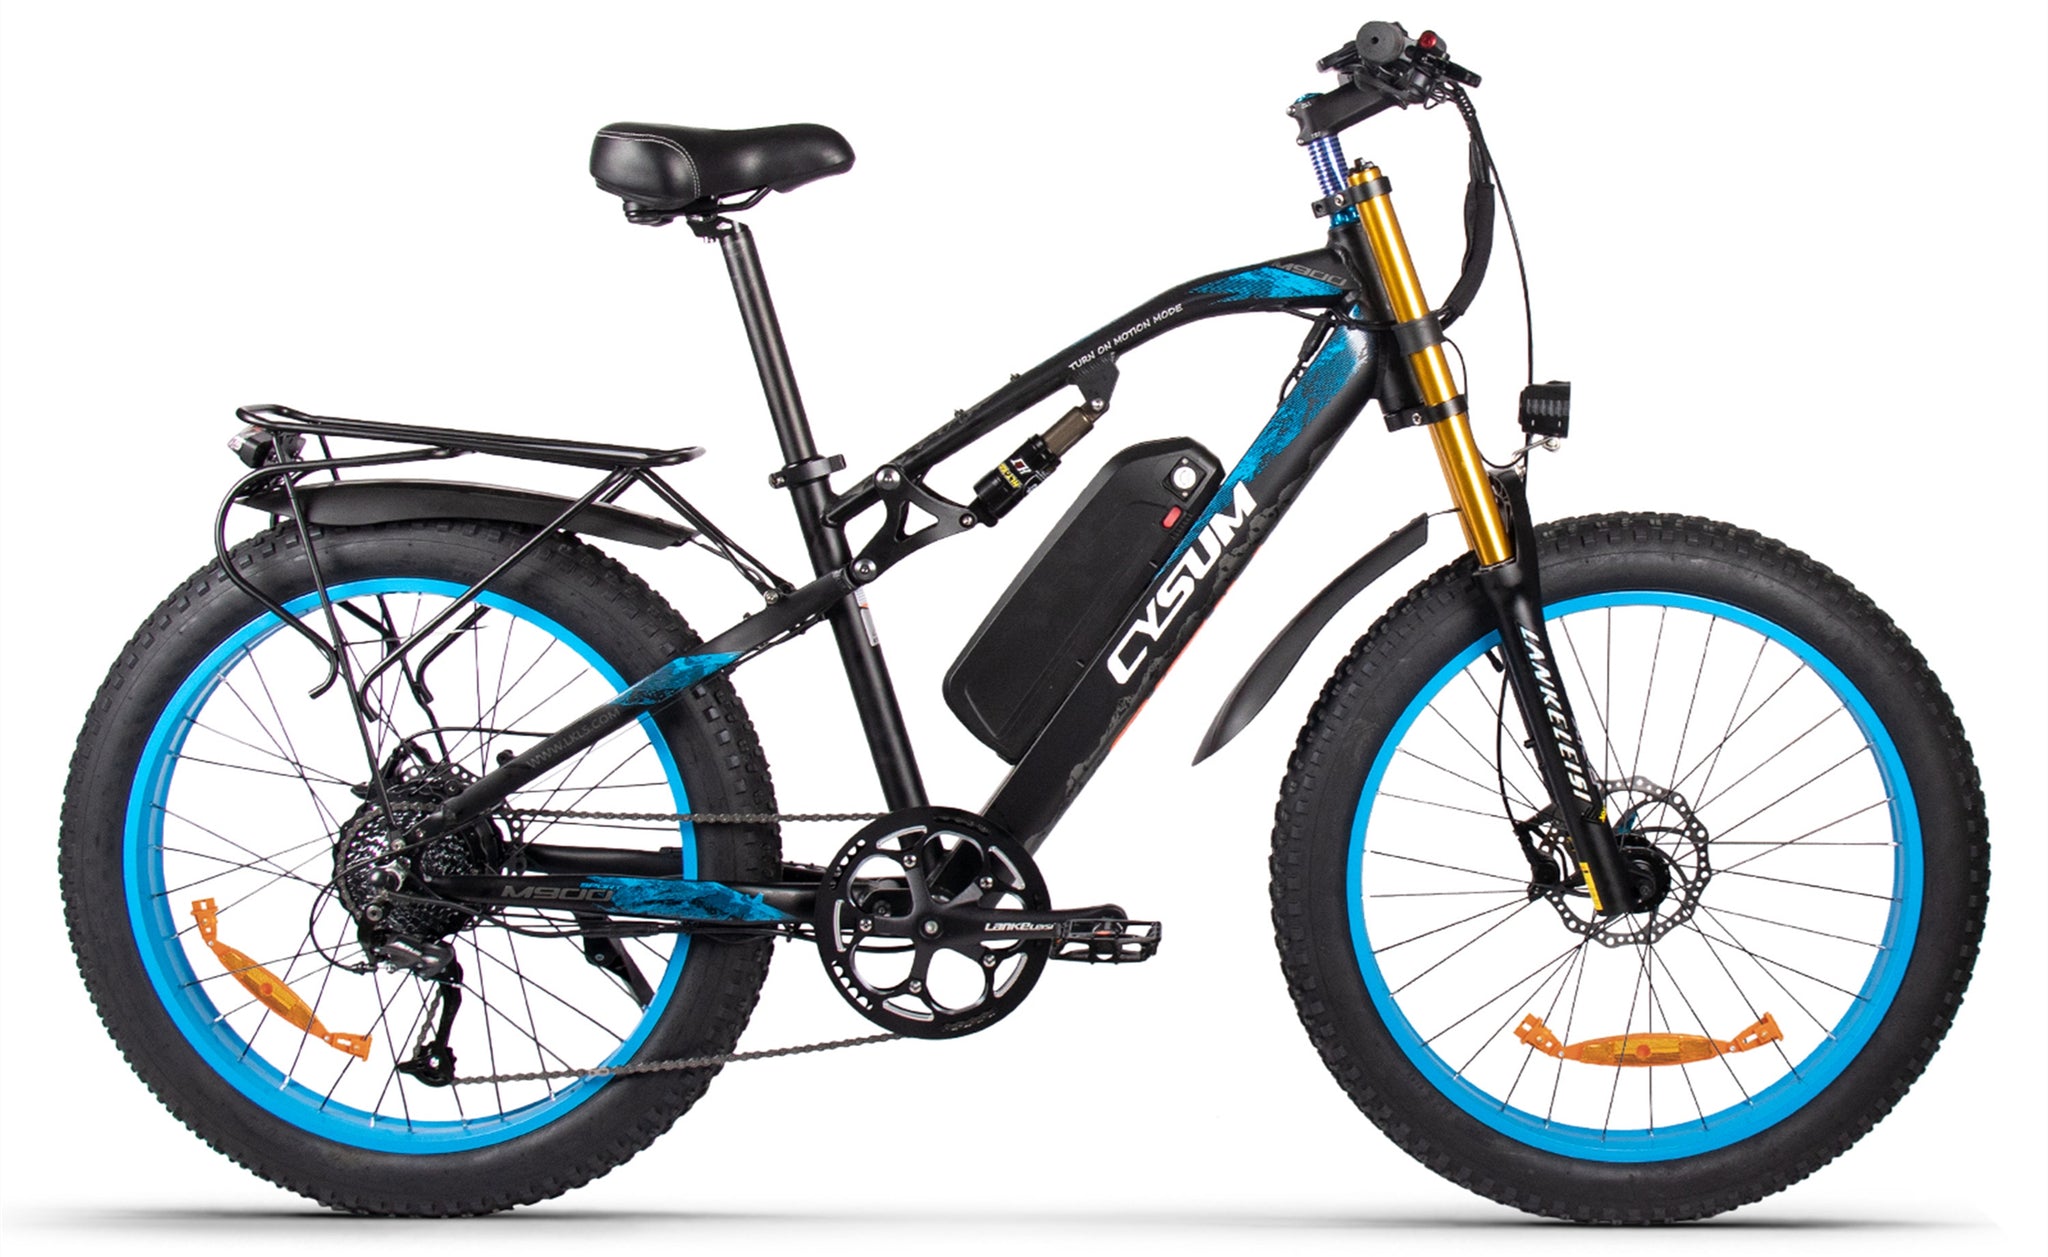 M900 PLUS 1000W 48V Motore 17Ah Li-Battery Fat E-Bike Bicicletta da uomo